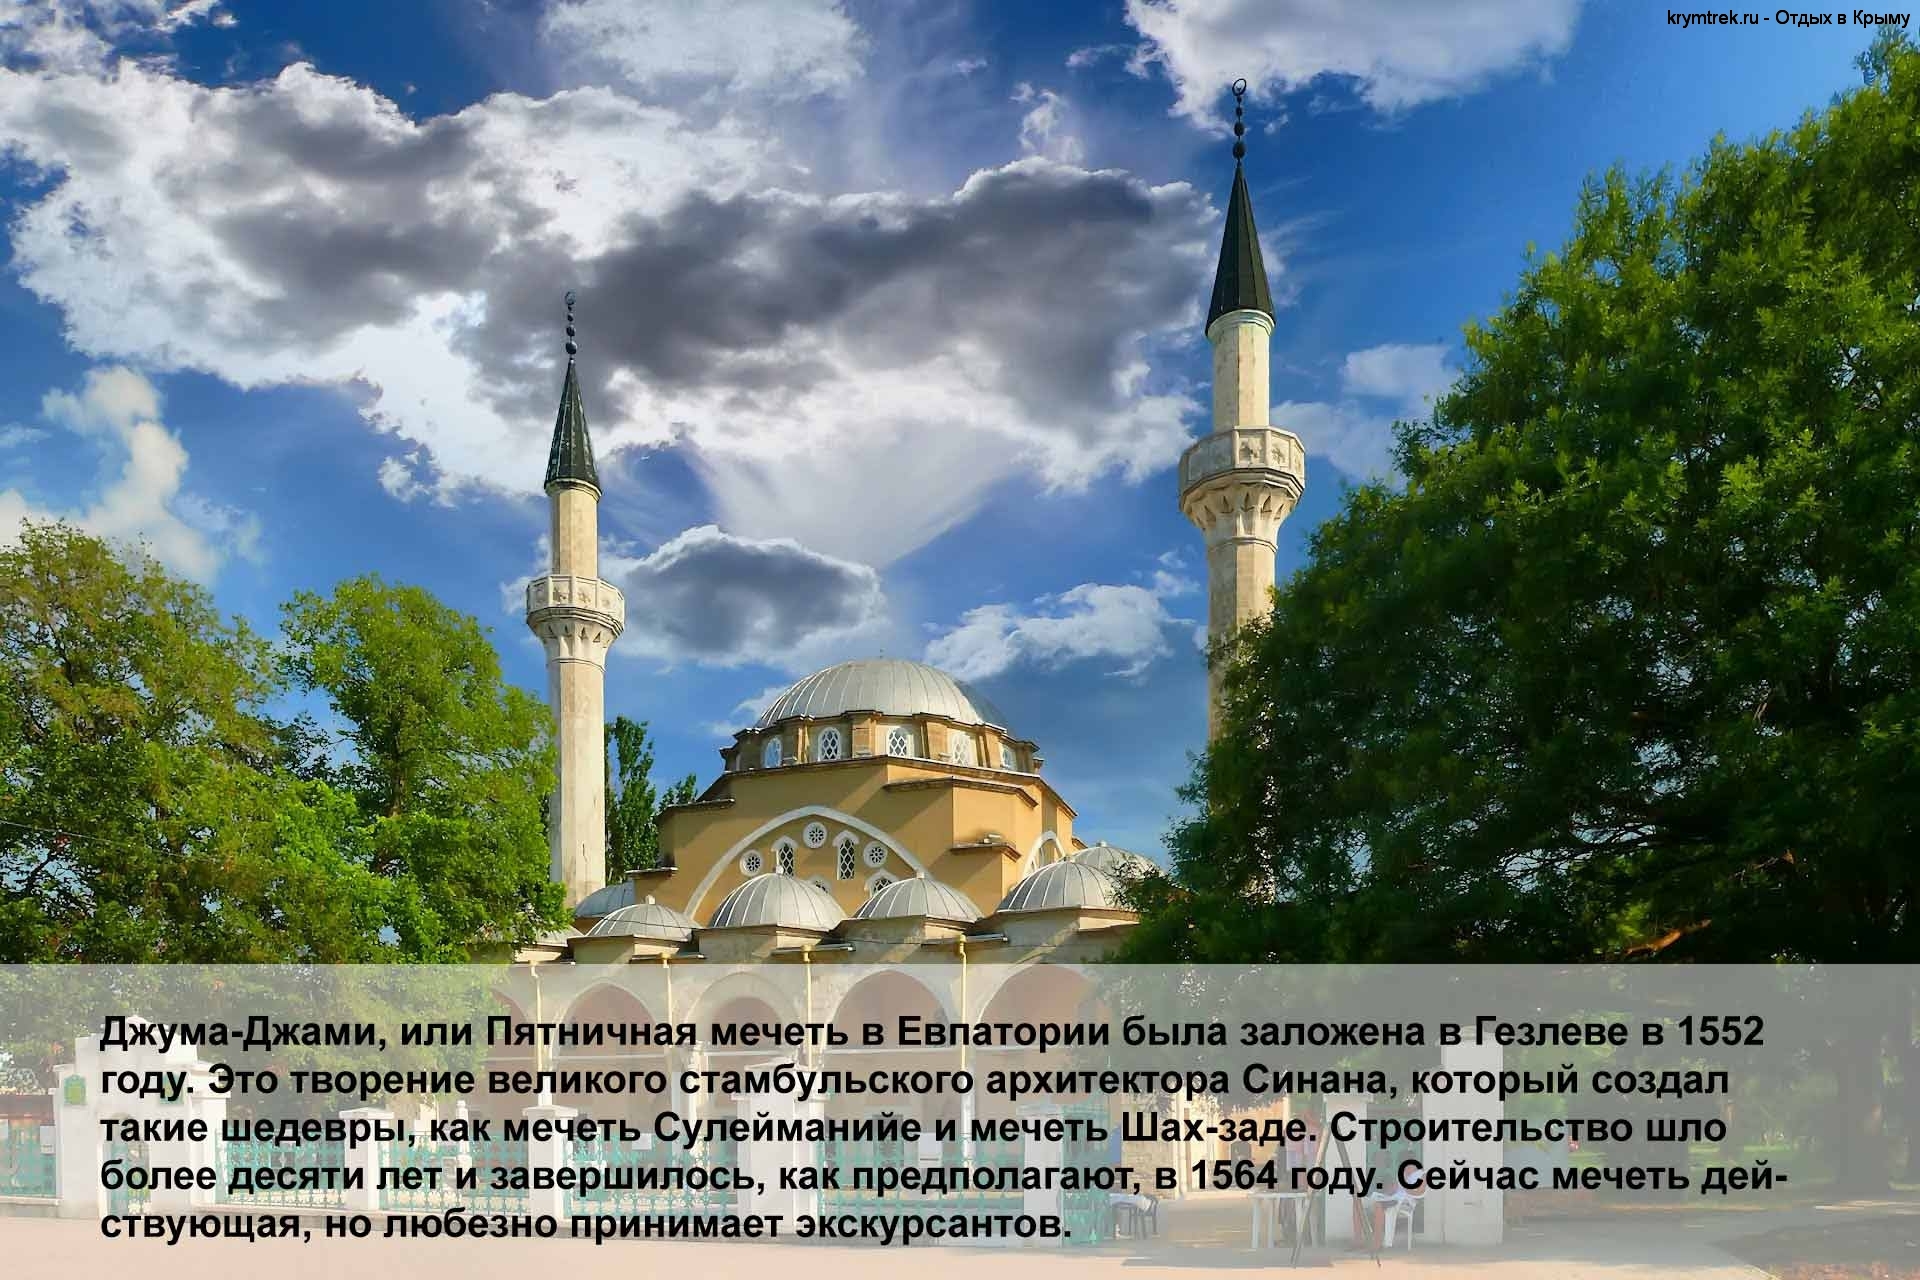 Джума-Джами, или Пятничная мечеть в Евпатории была заложена в Гезлеве в 1552 году. Это творение великого стамбульского архитектора Синана, который создал такие шедевры, как мечеть Сулейманийе и мечеть Шах-заде. Строительство шло более десяти лет и завершилось, как предполагают, в 1564 году. Сейчас мечеть действующая, но любезно принимает экскурсантов.